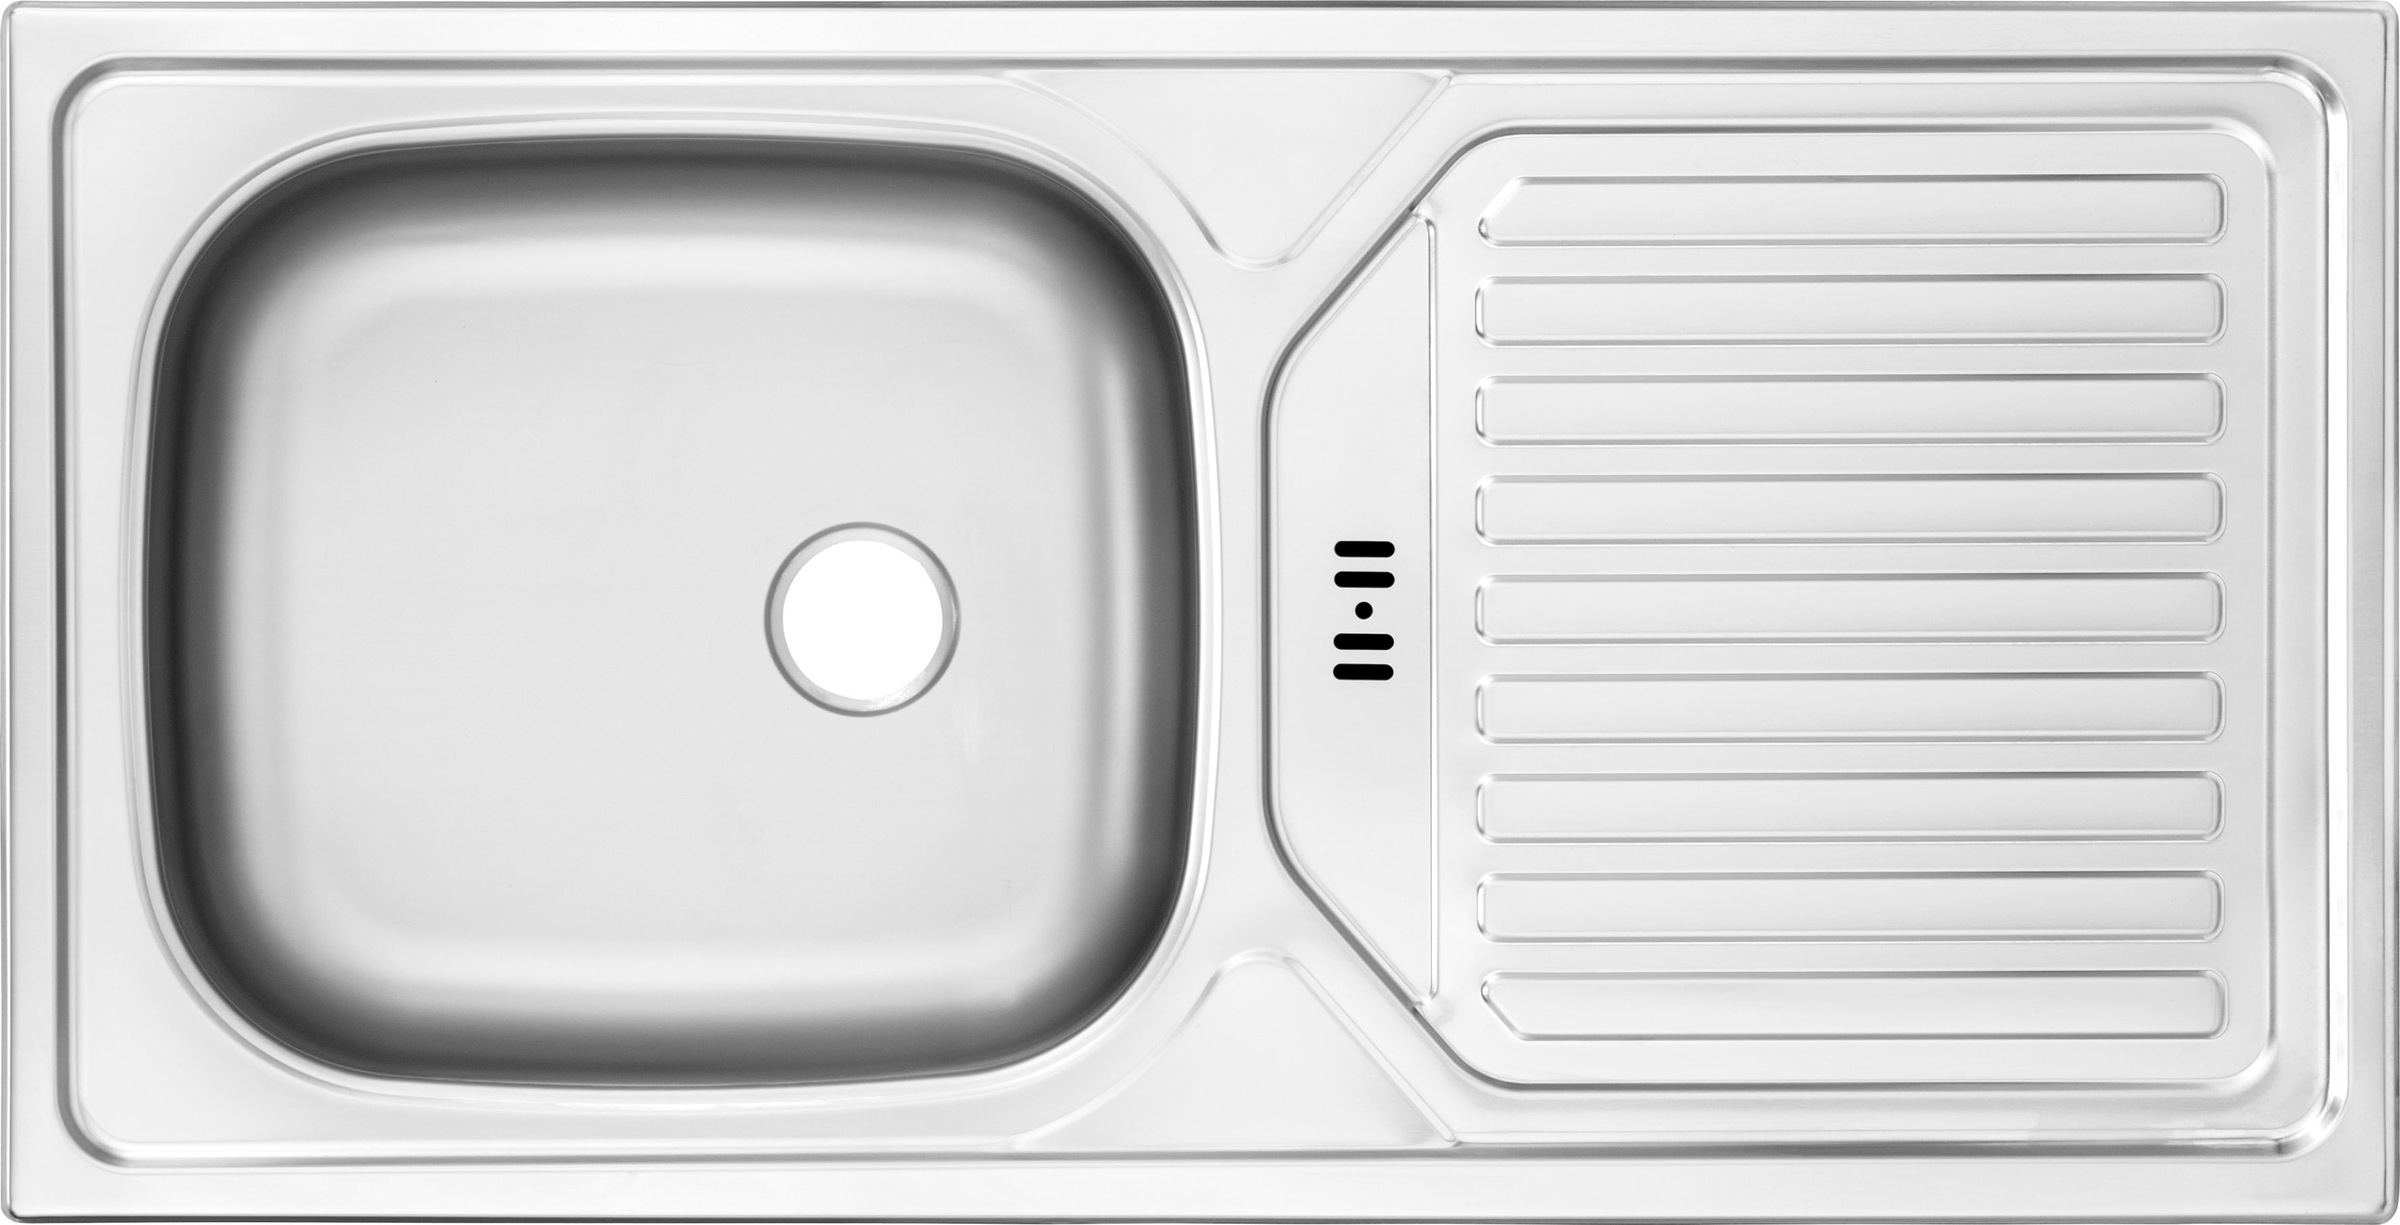 OPTIFIT Küchenzeile »Leer Breite 300 cm«, mit Hanseatic E-Geräten, inkl. Kühlschrank